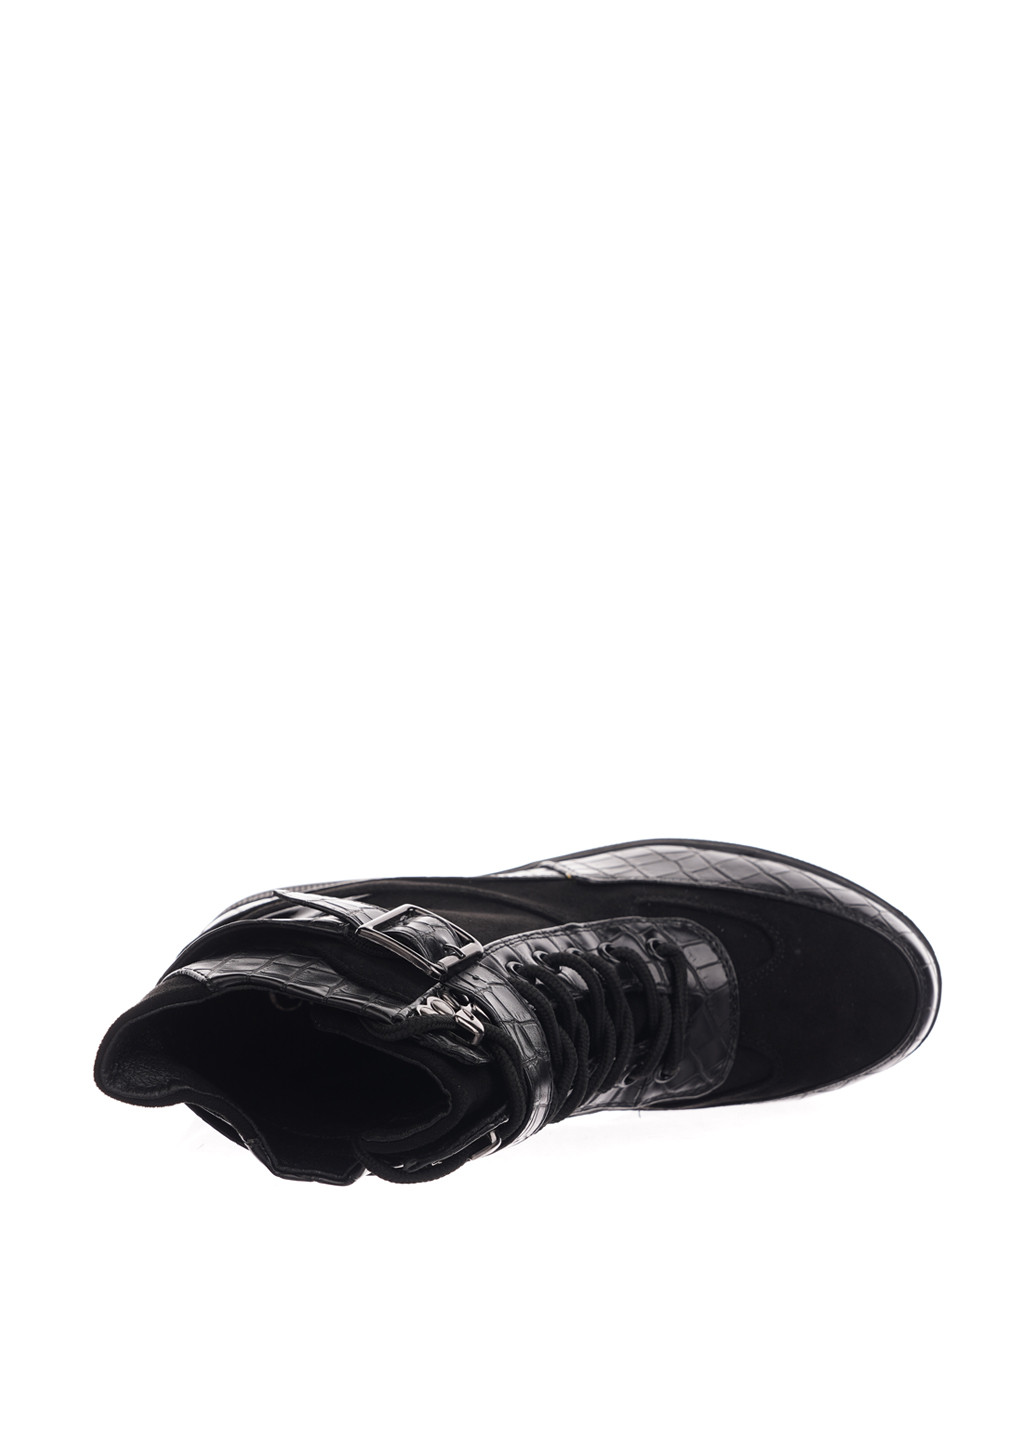 Осенние ботинки Gollmony с пряжкой из искусственной кожи, из искусственной замши